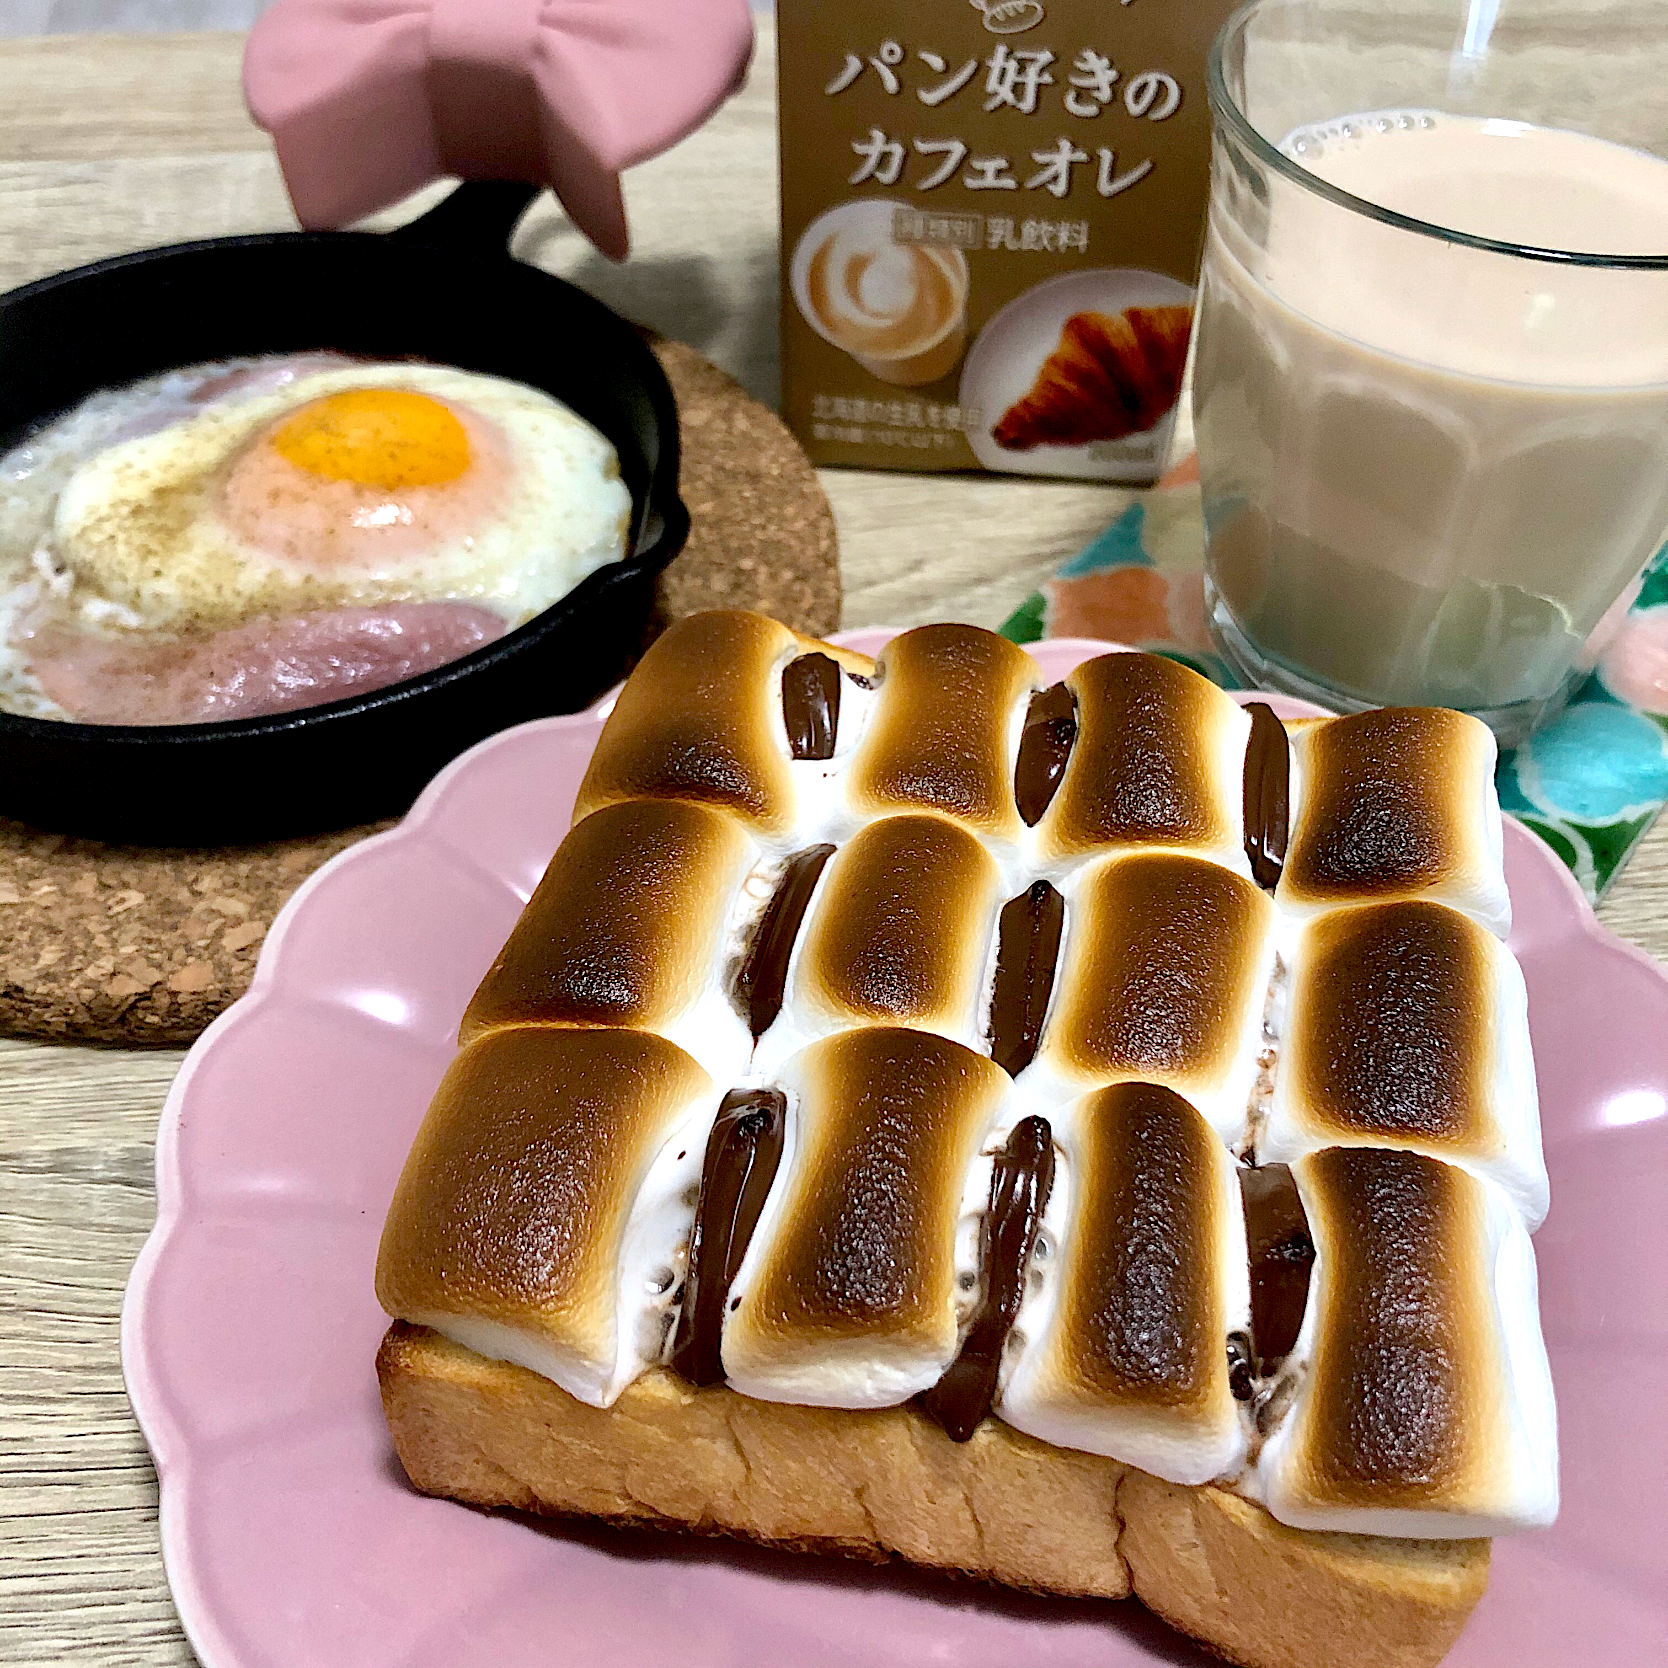 チョコマシュマロトーストとパン好きのカフェオレの朝ごはん 結花 Snapdish スナップディッシュ Id Itigfa